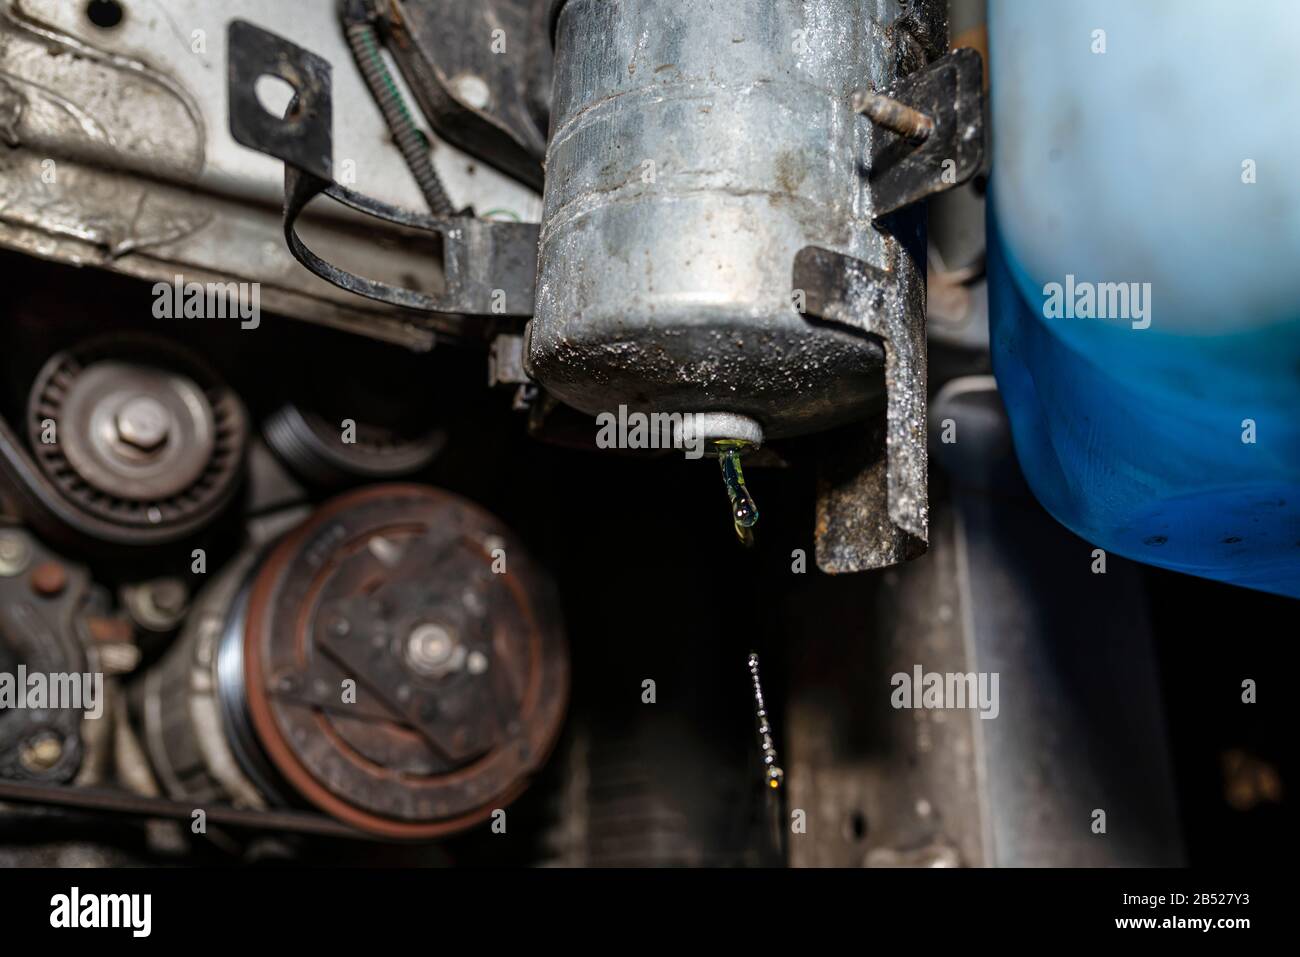 Filtre à carburant usé installé dans la voiture dans le passage de roue, qui goutte du carburant visible depuis le bas du filtre. Banque D'Images